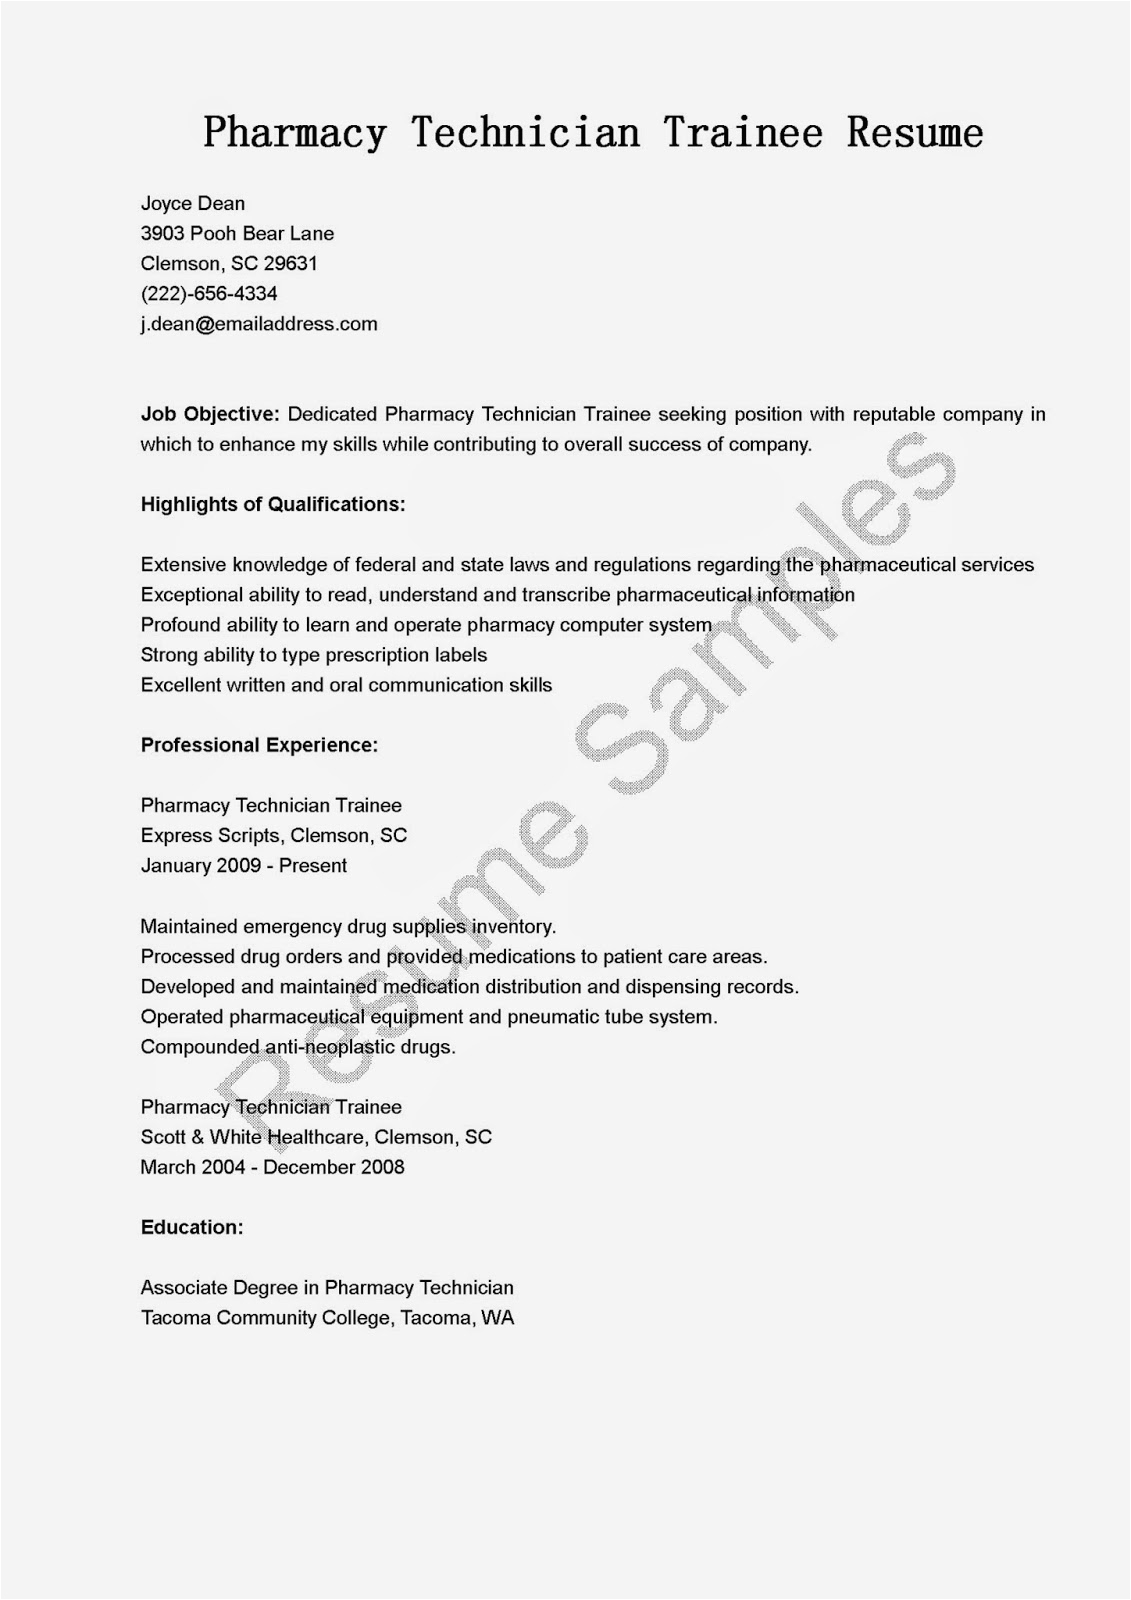 Sample Resume for Pharmacy Technician Trainee Resume Samples Pharmacy Technician Trainee Resume Sample